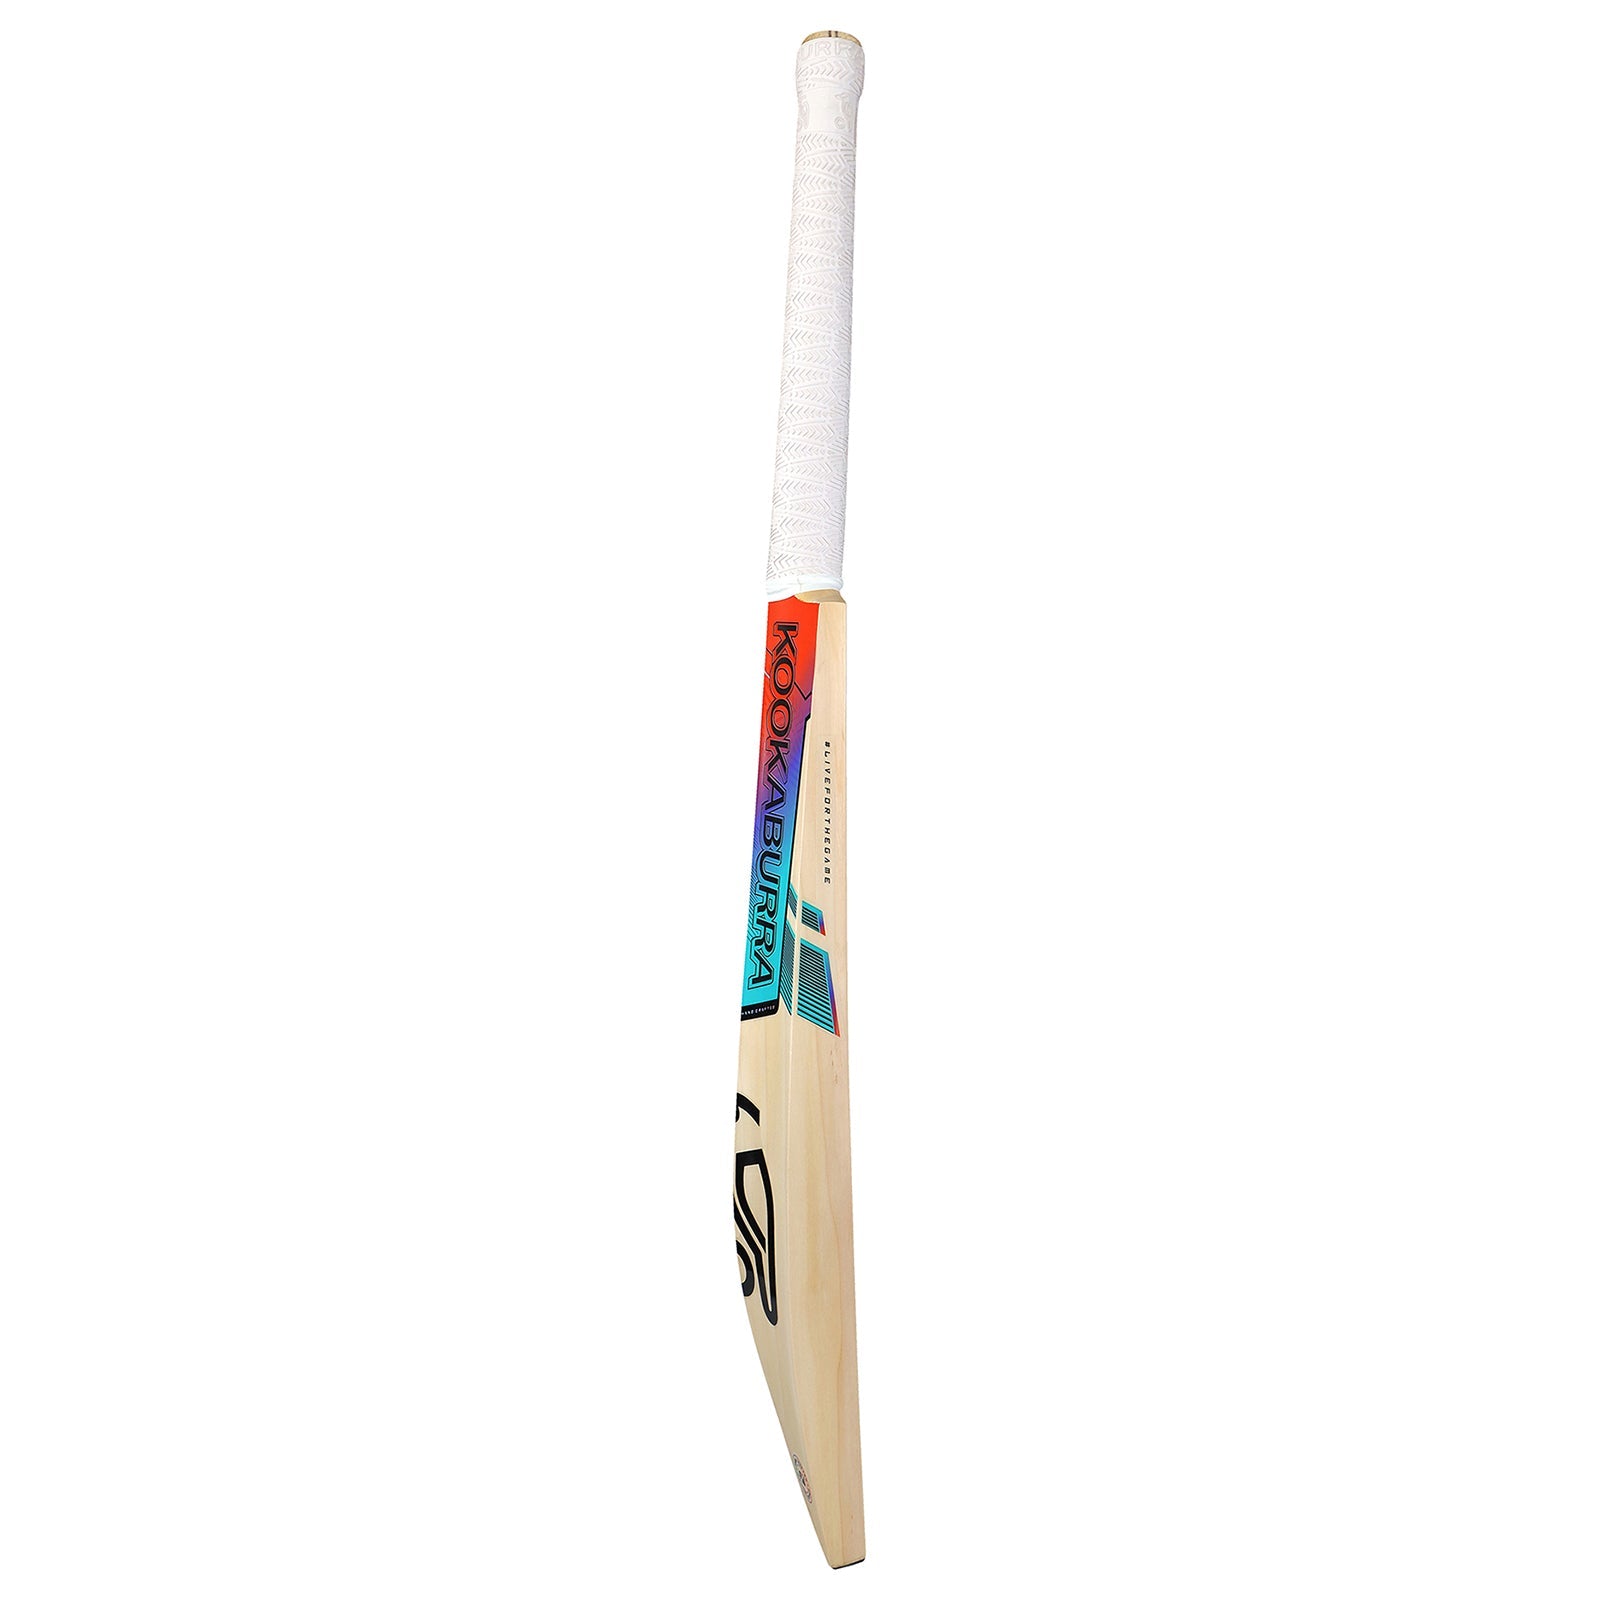 Kookaburra Aura Pro 4.0 Cricket Bat - Senior